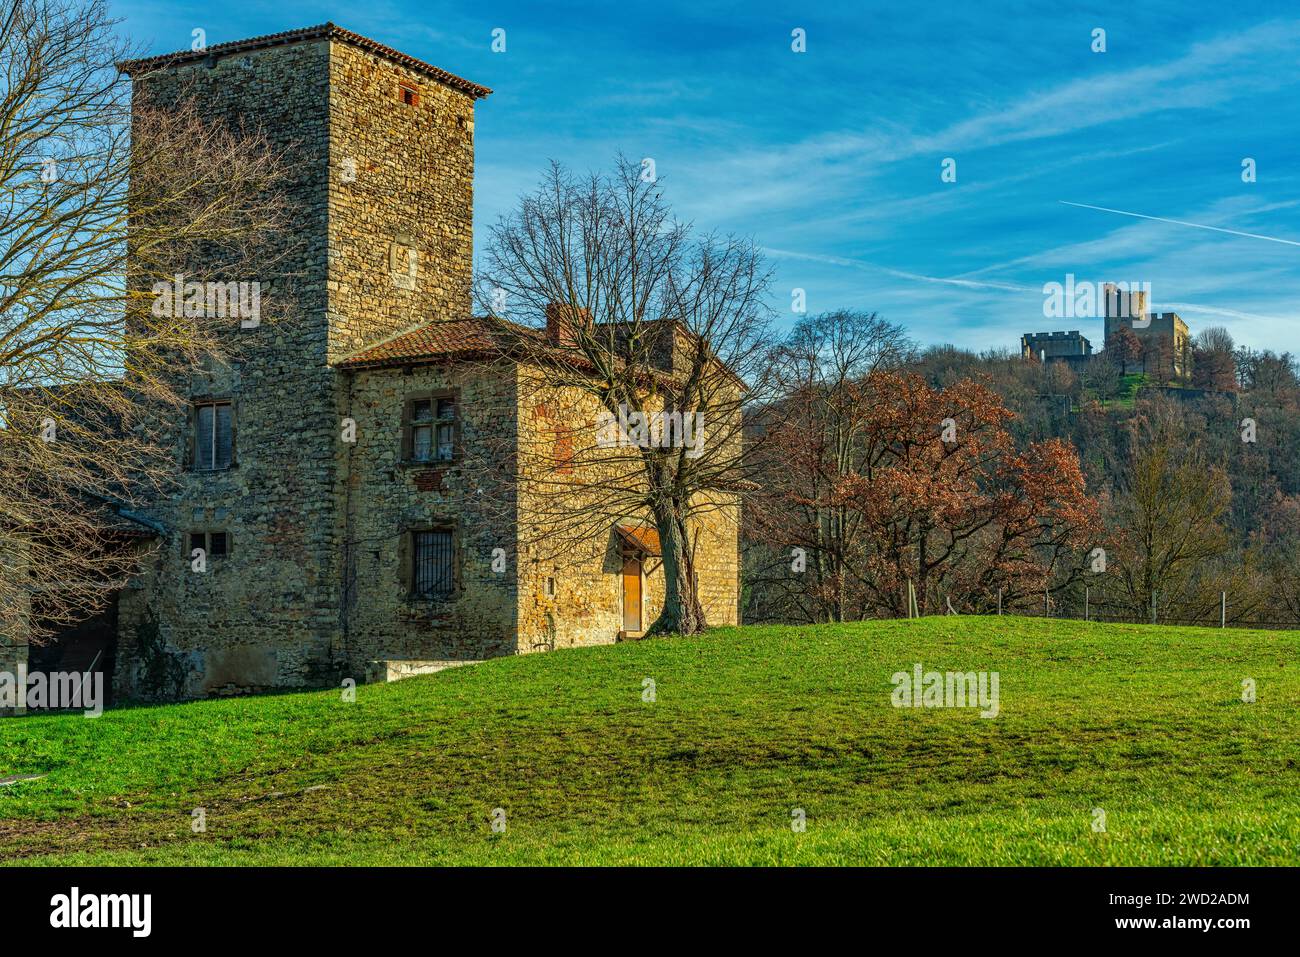 Das befestigte Haus von Allinges ist ein befestigter Bauernhof und aristokratische Residenz, klassifiziert als historisches Denkmal.Saint-Quentin-Fallavier, Isère, Frankreich Stockfoto